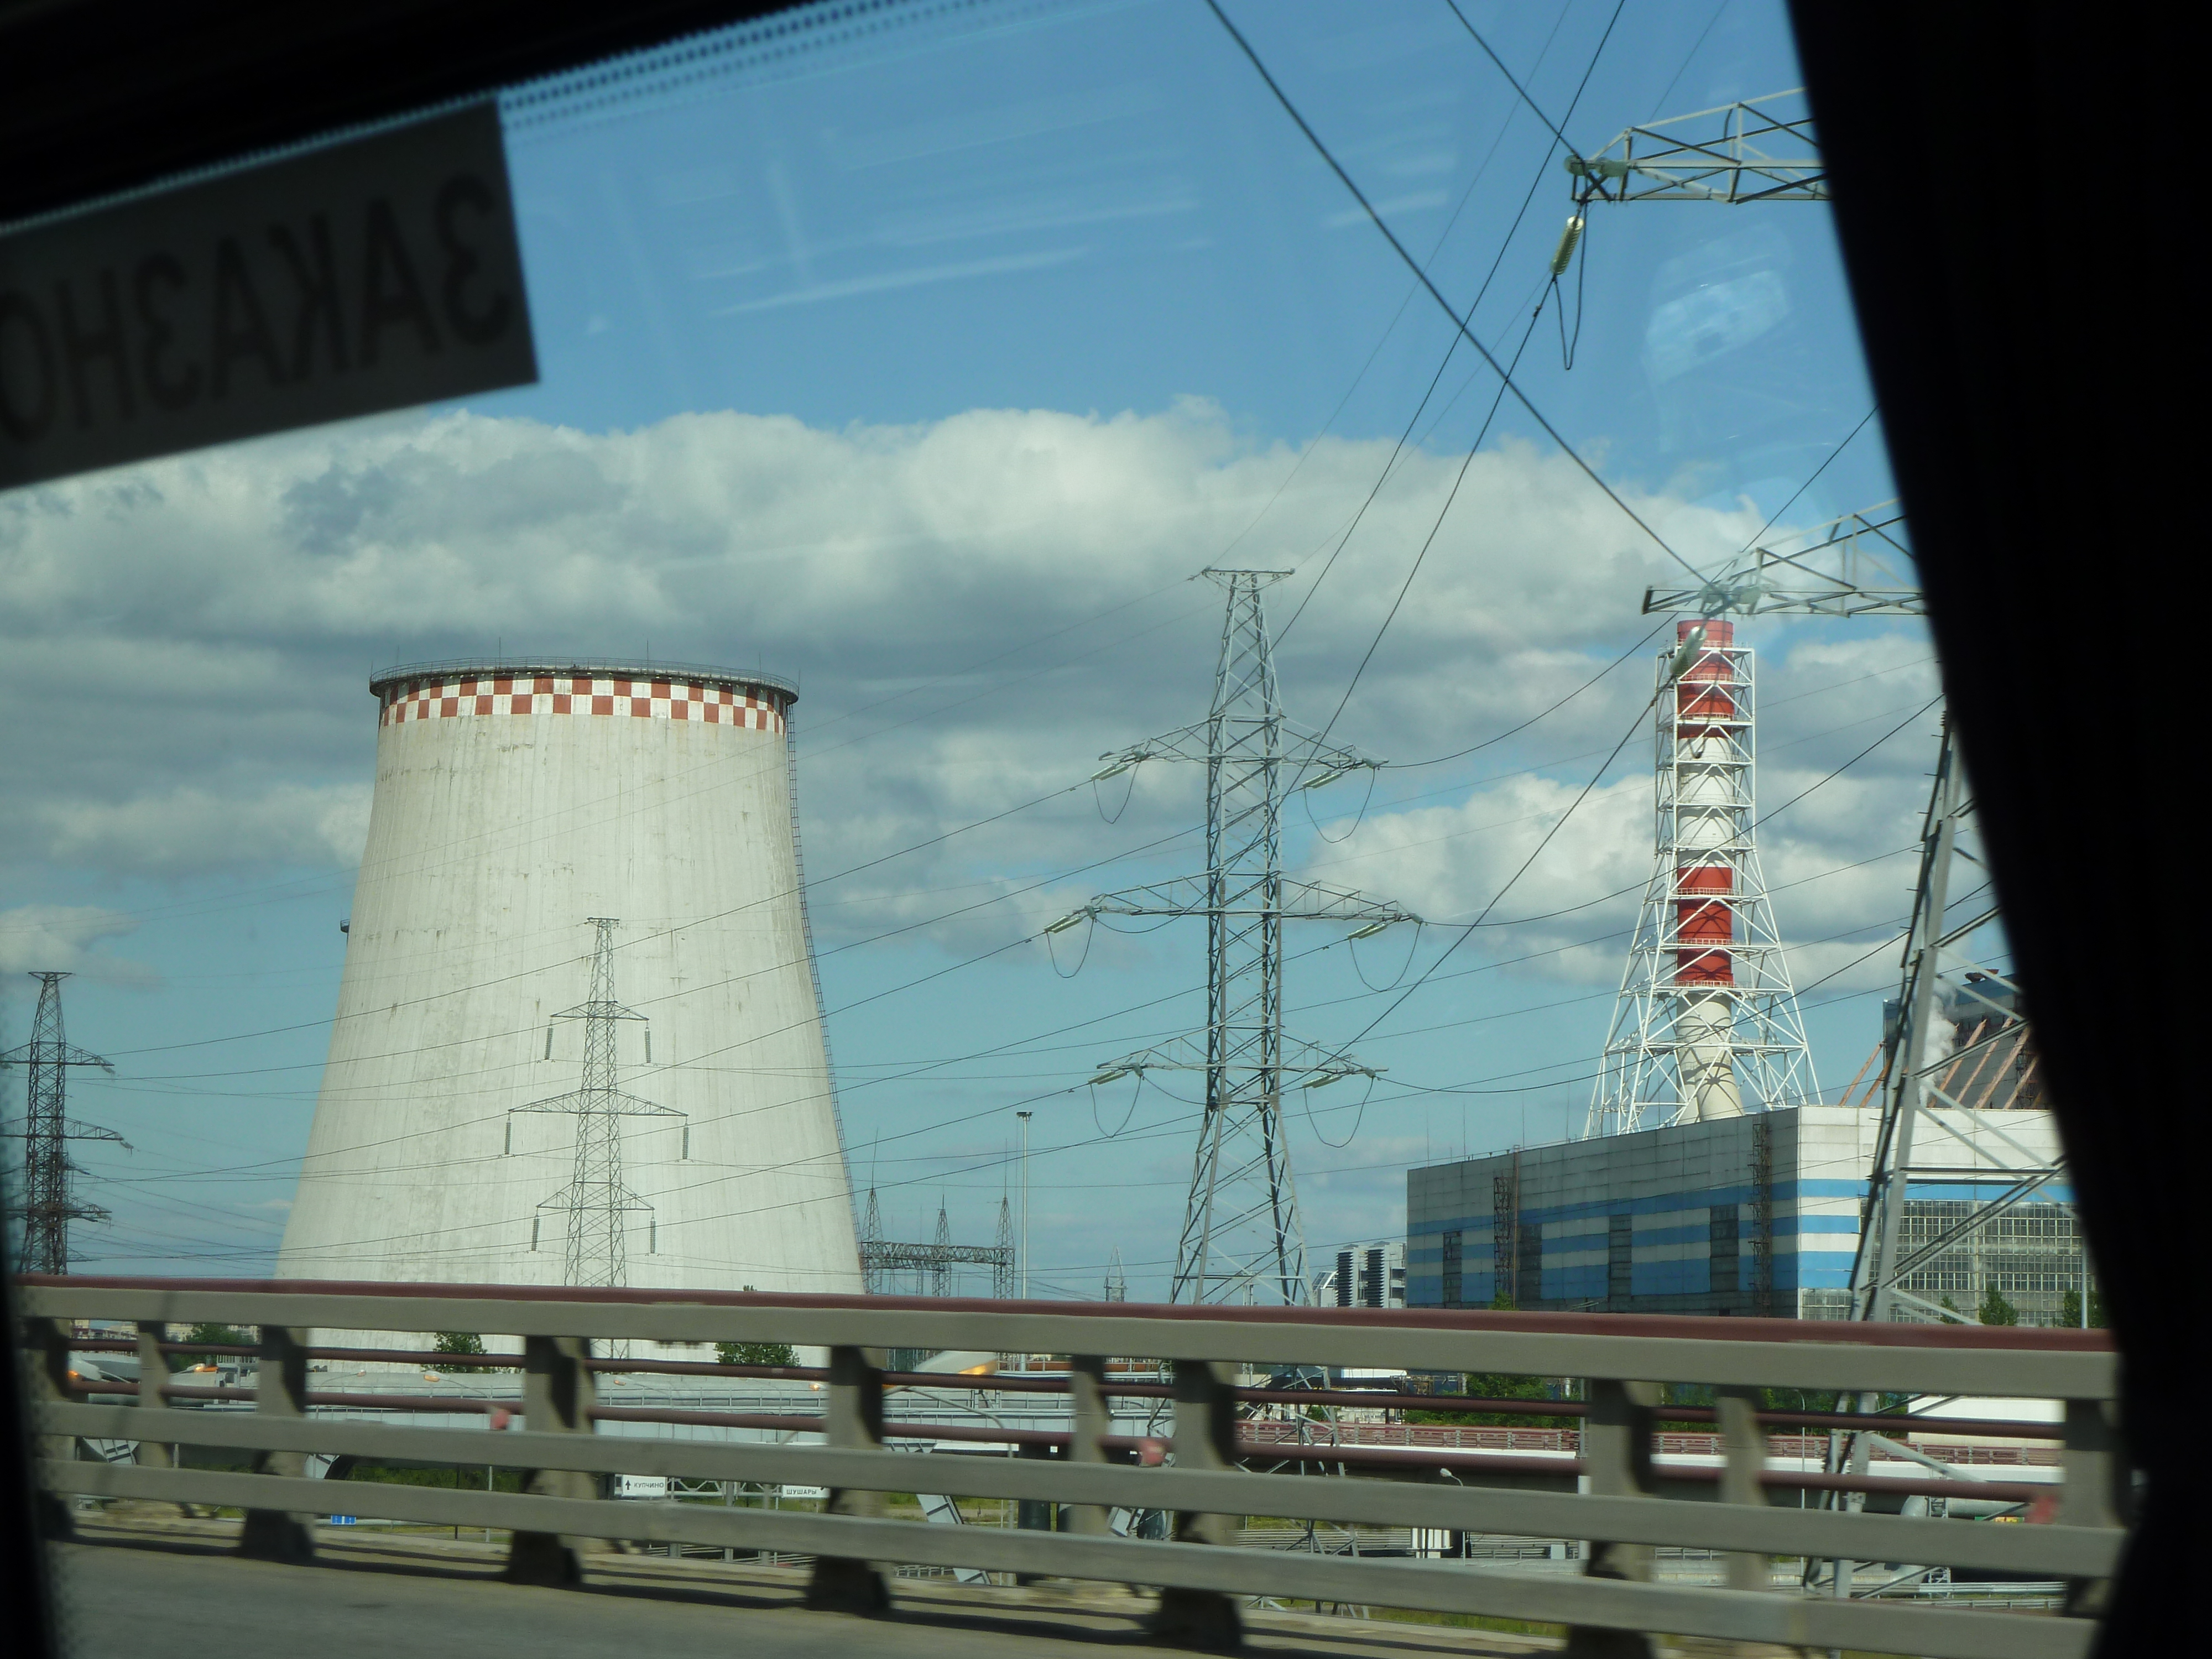 St-Petersburg-reactor-from-the-road.jpg